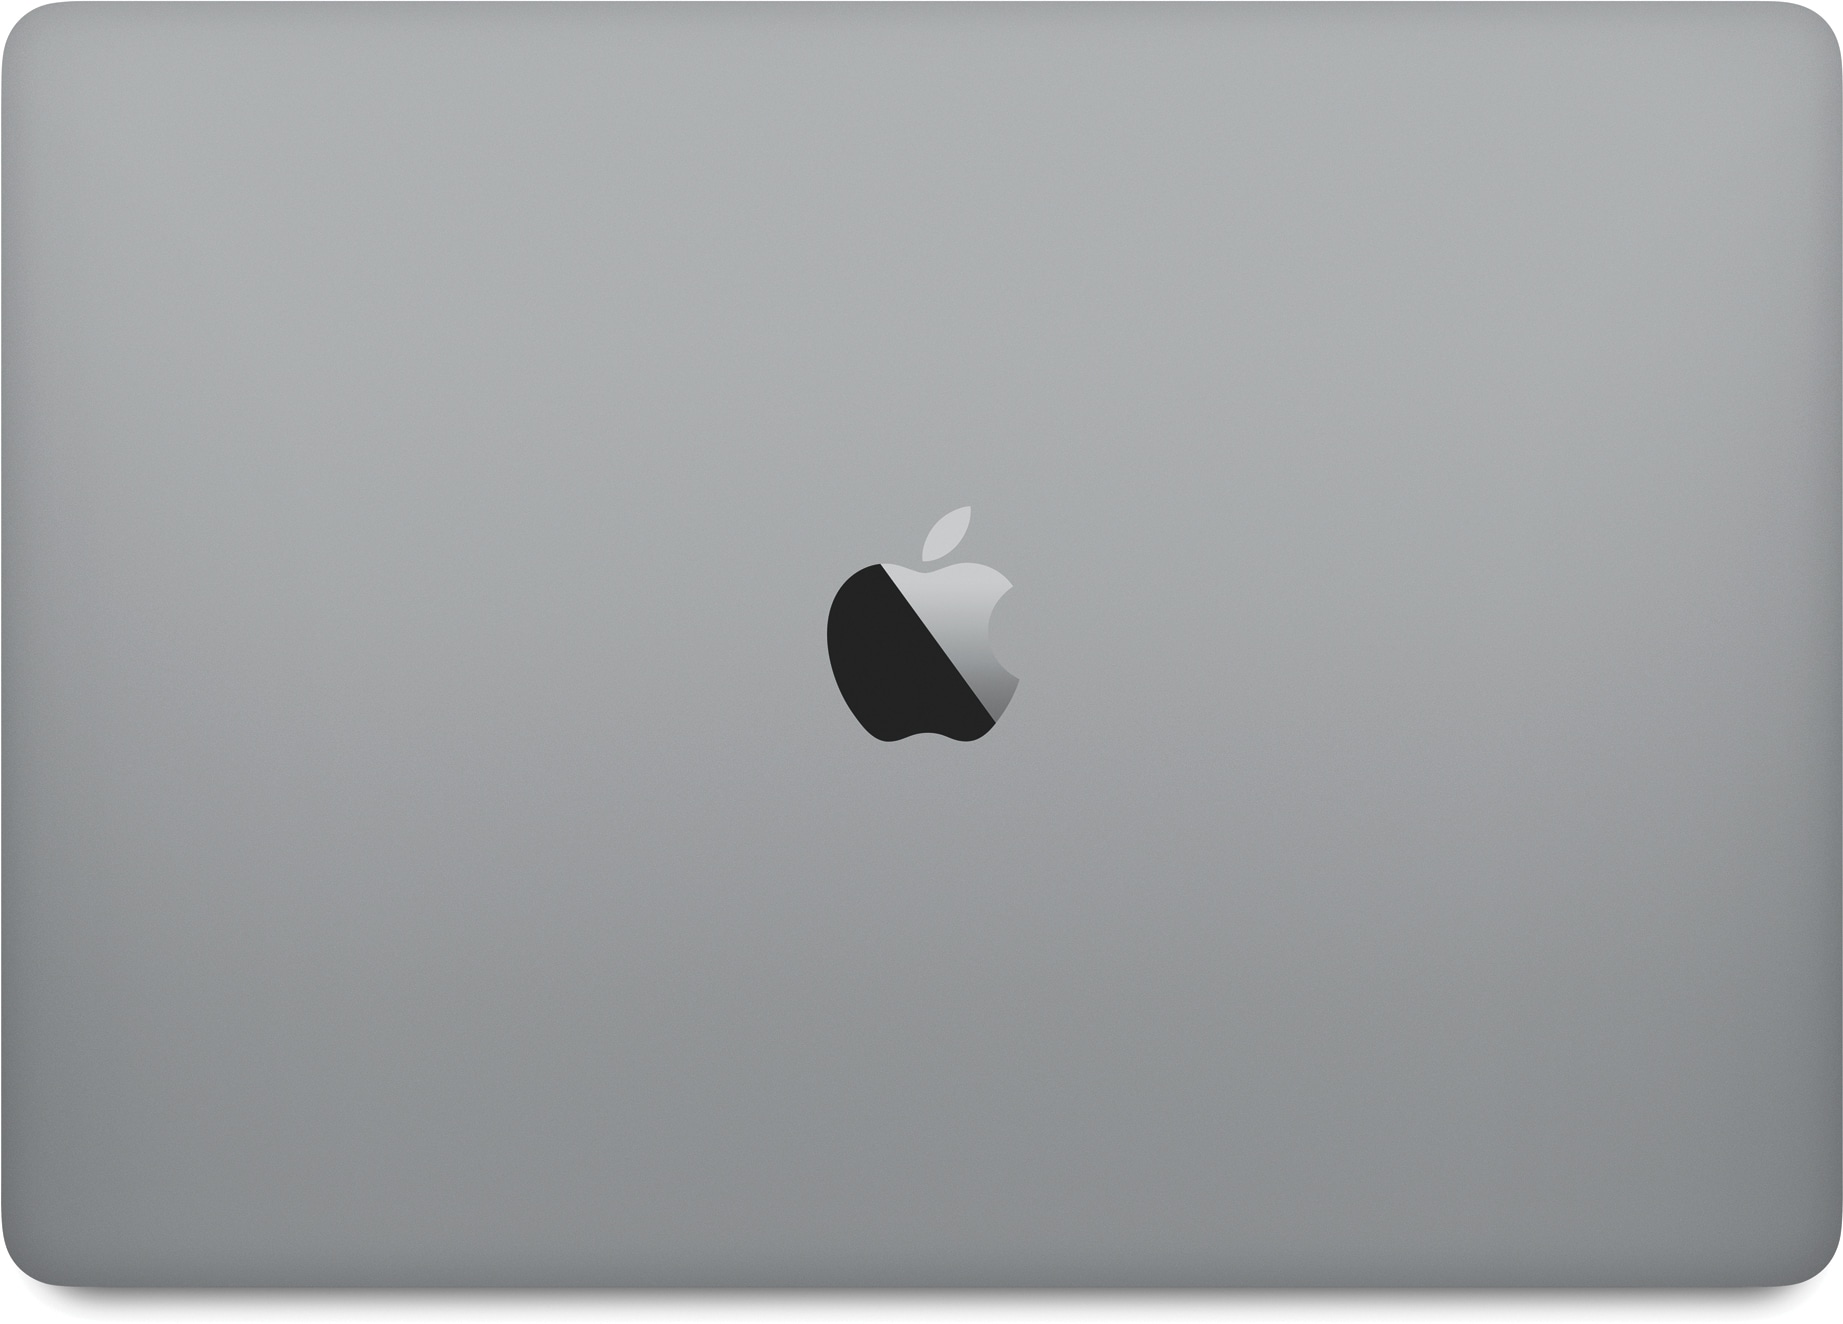 MacBook Pro abu-abu ruang tertutup baru dilihat dari atas